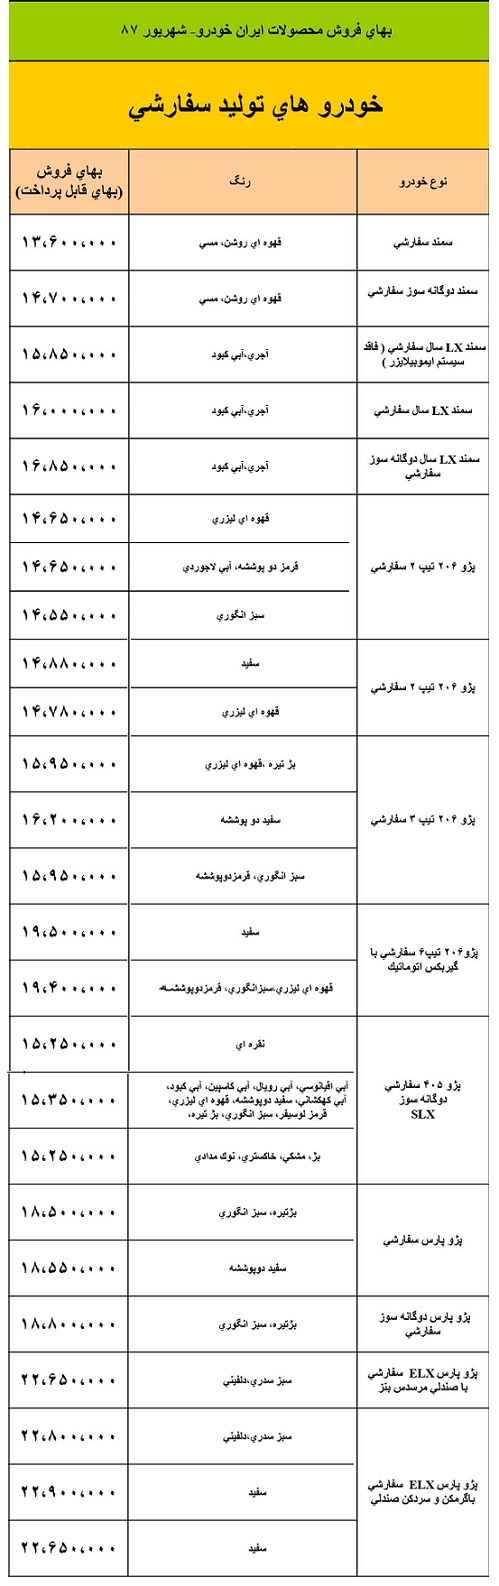 نگاهی به قیمت محصولات ایران خودرو در سال 87 + جدول